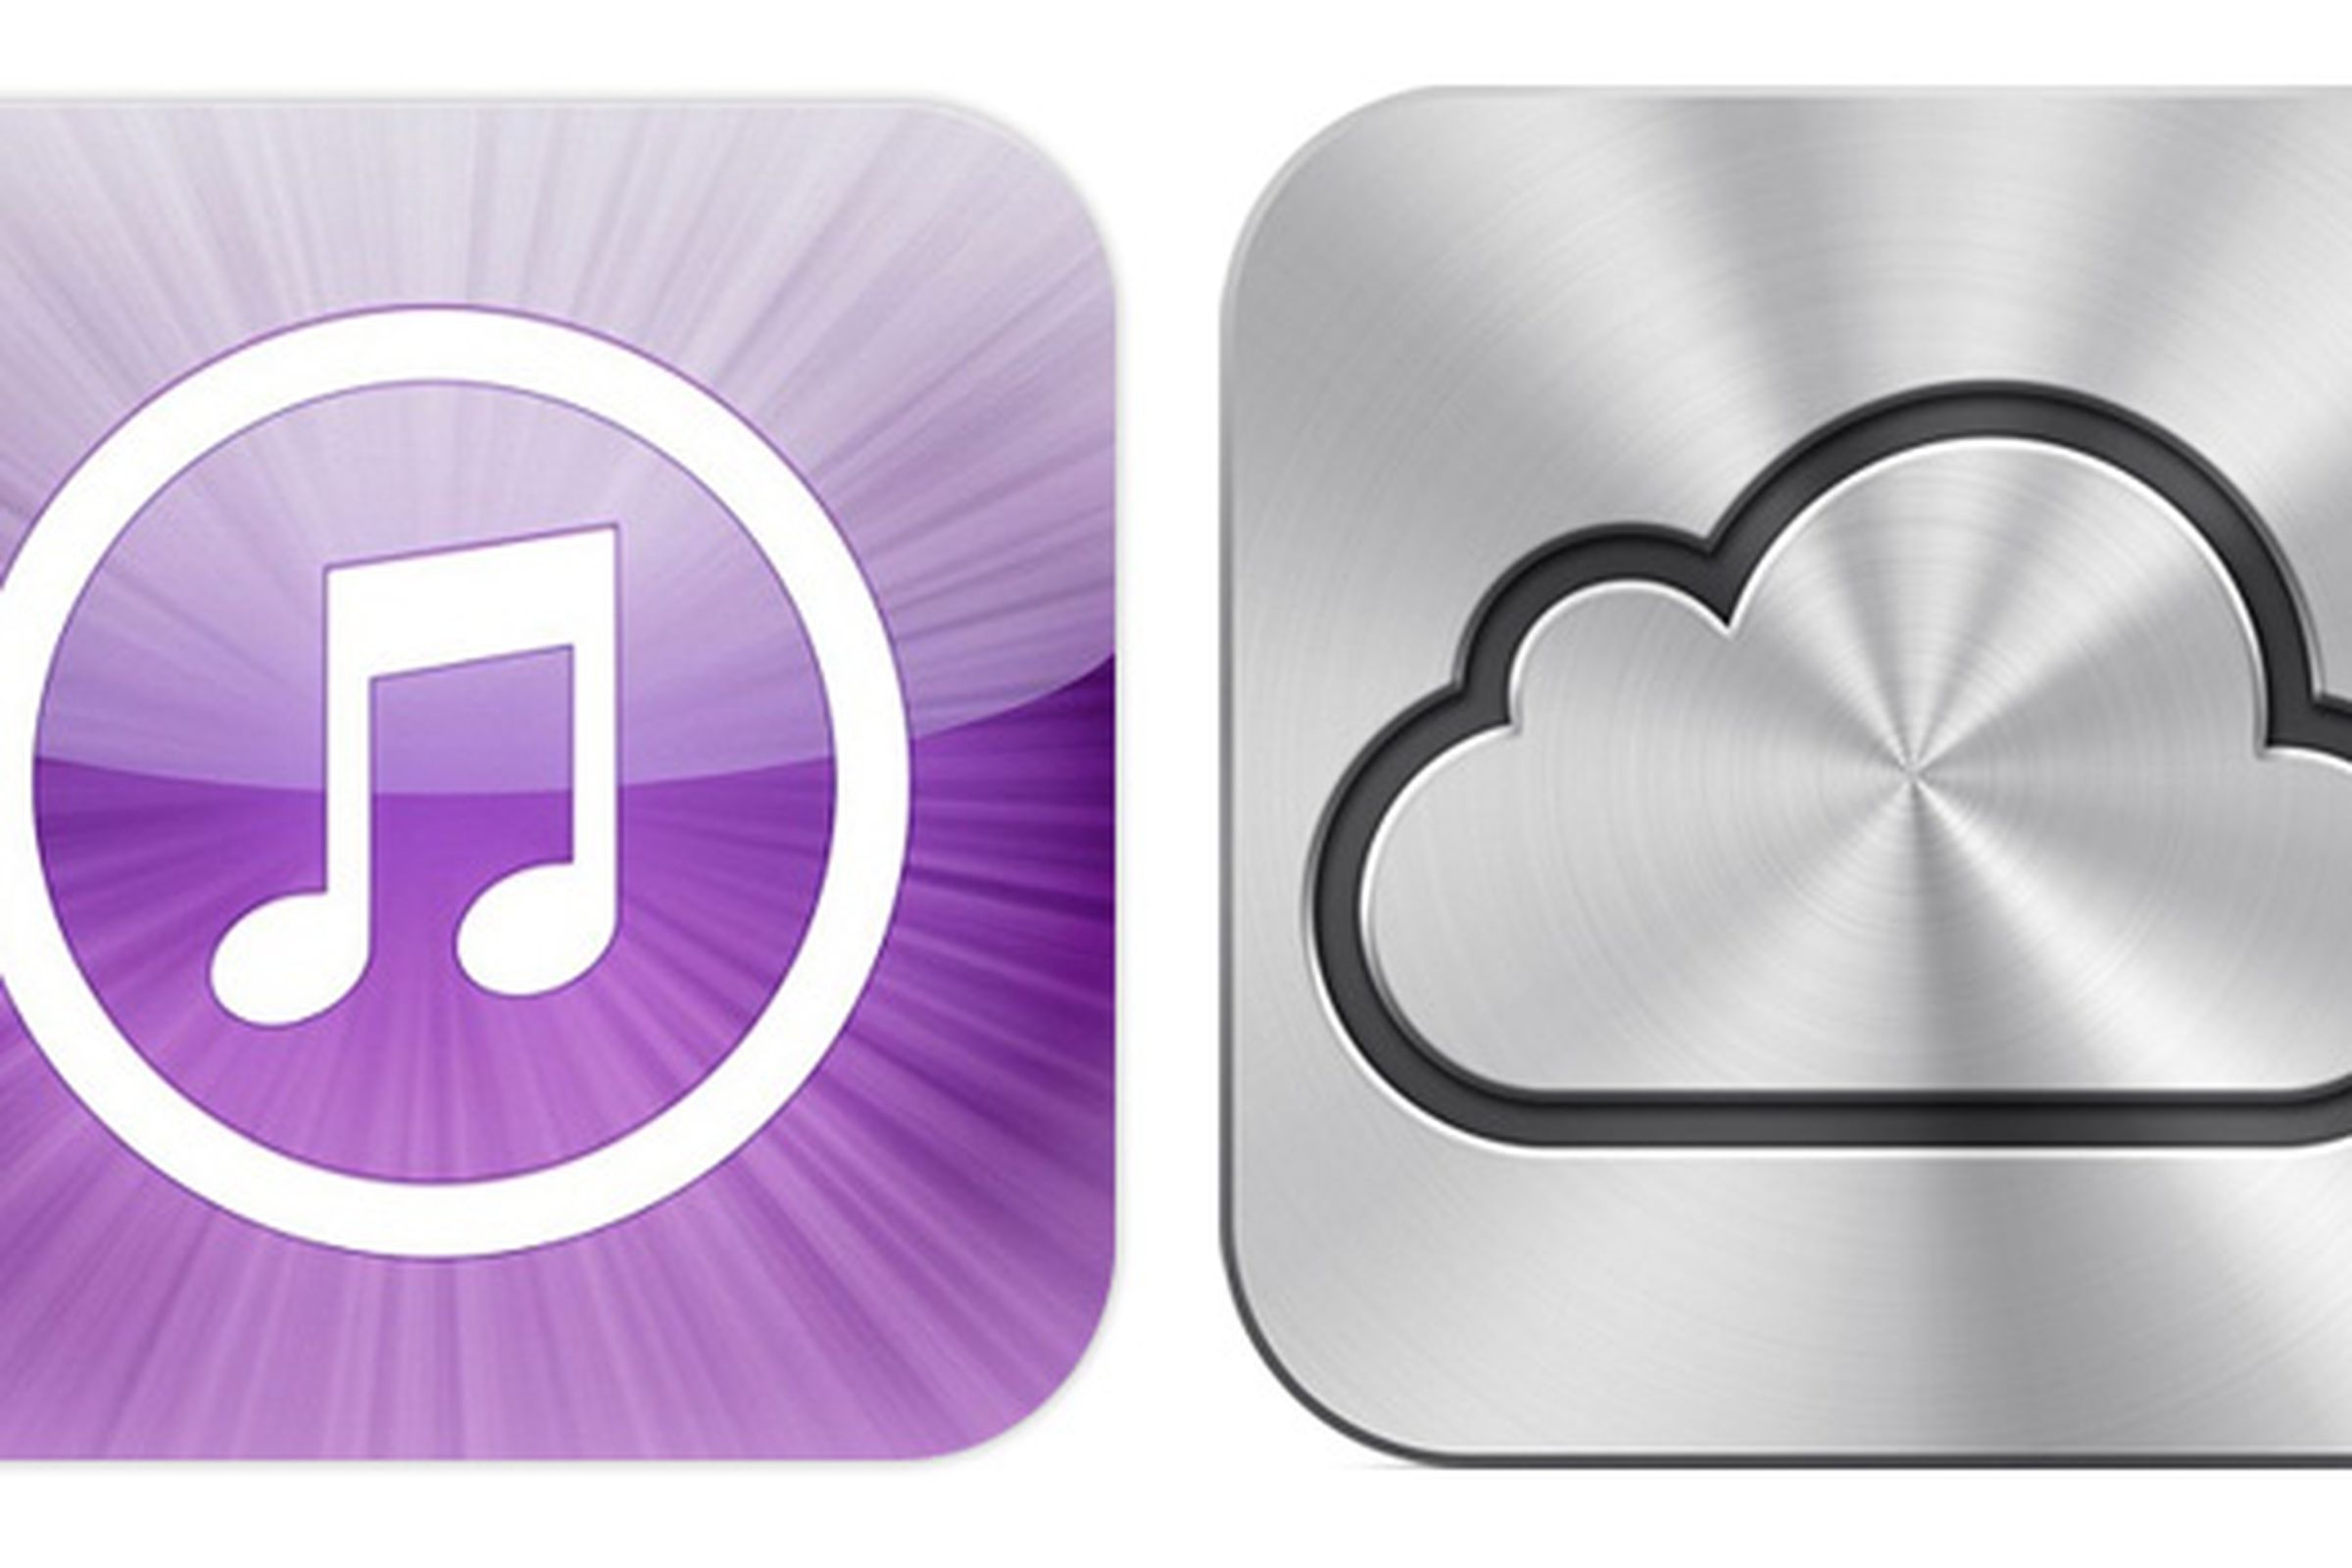 iTunes and iCloud logos